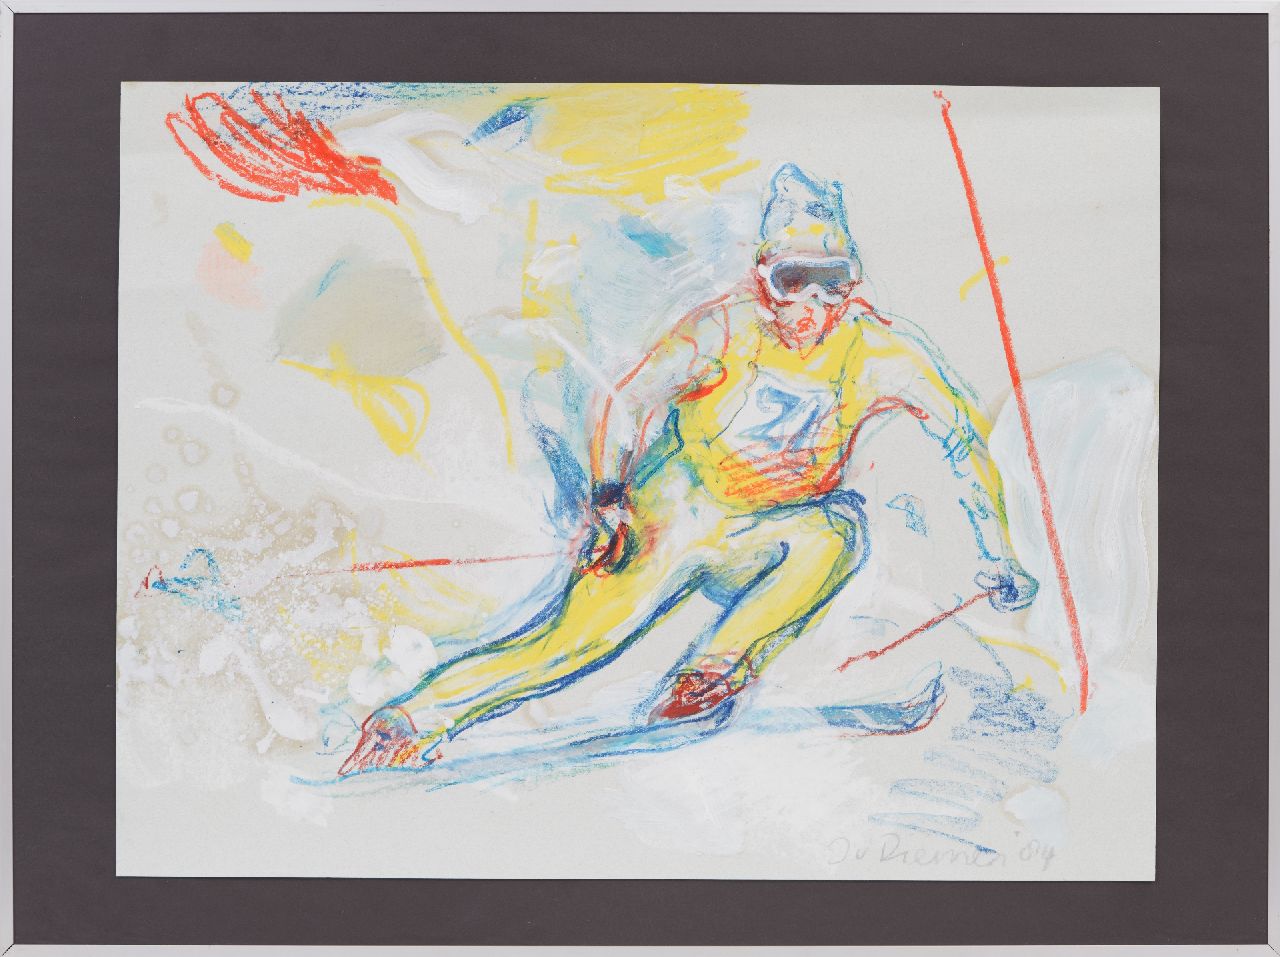 Diemen J. van | Jan van Diemen, Slalom skier, gouache and chalk on paper 50.0 x 65.0 cm, signed l.r. and dated '84